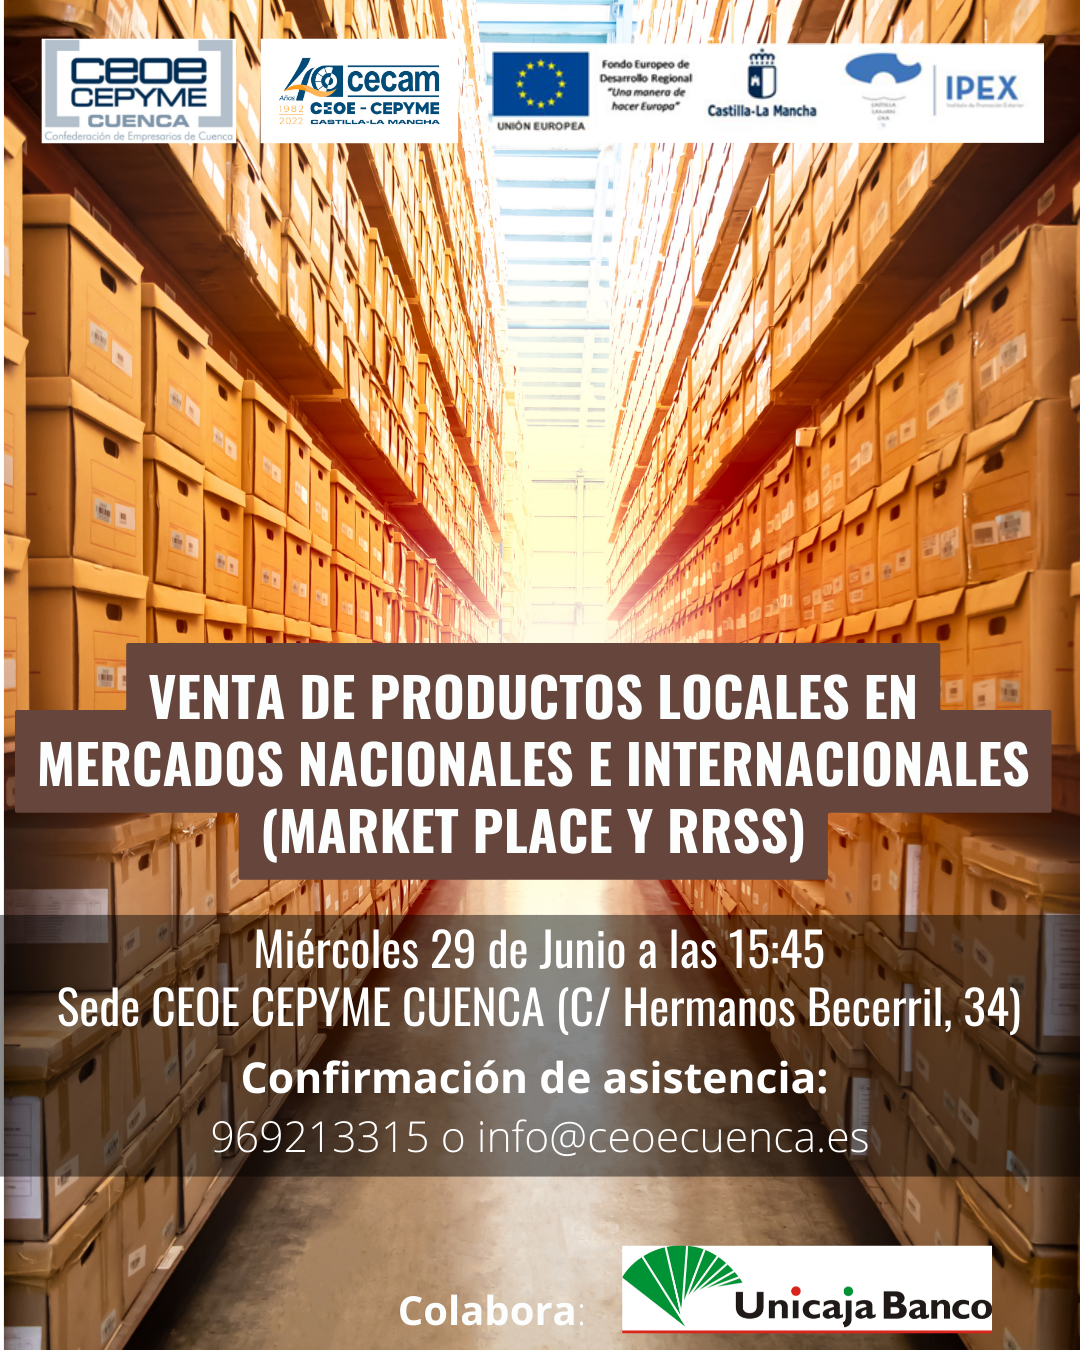 CEOE CEPYME Cuenca impartirá una jornada para vender productos locales en mercados nacionales e internacionales